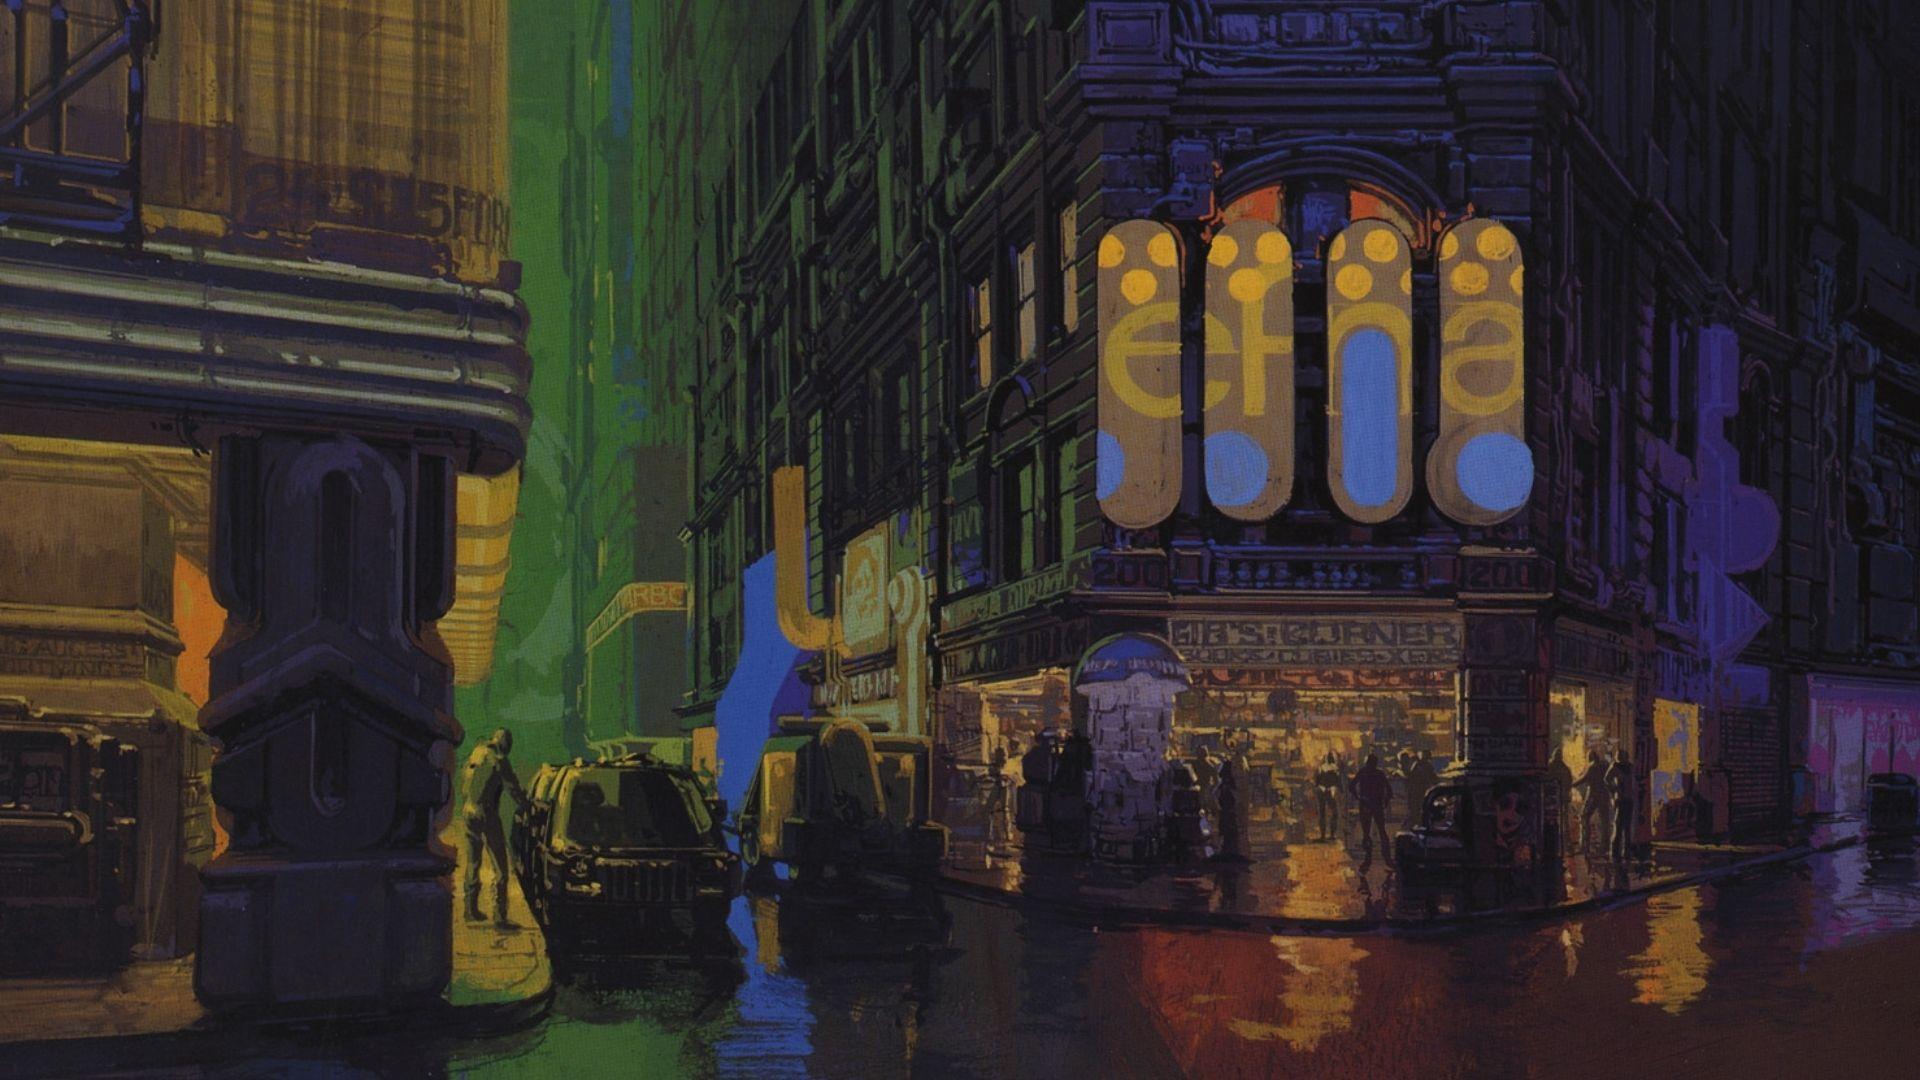 Blade Runner 2K Wallpapers